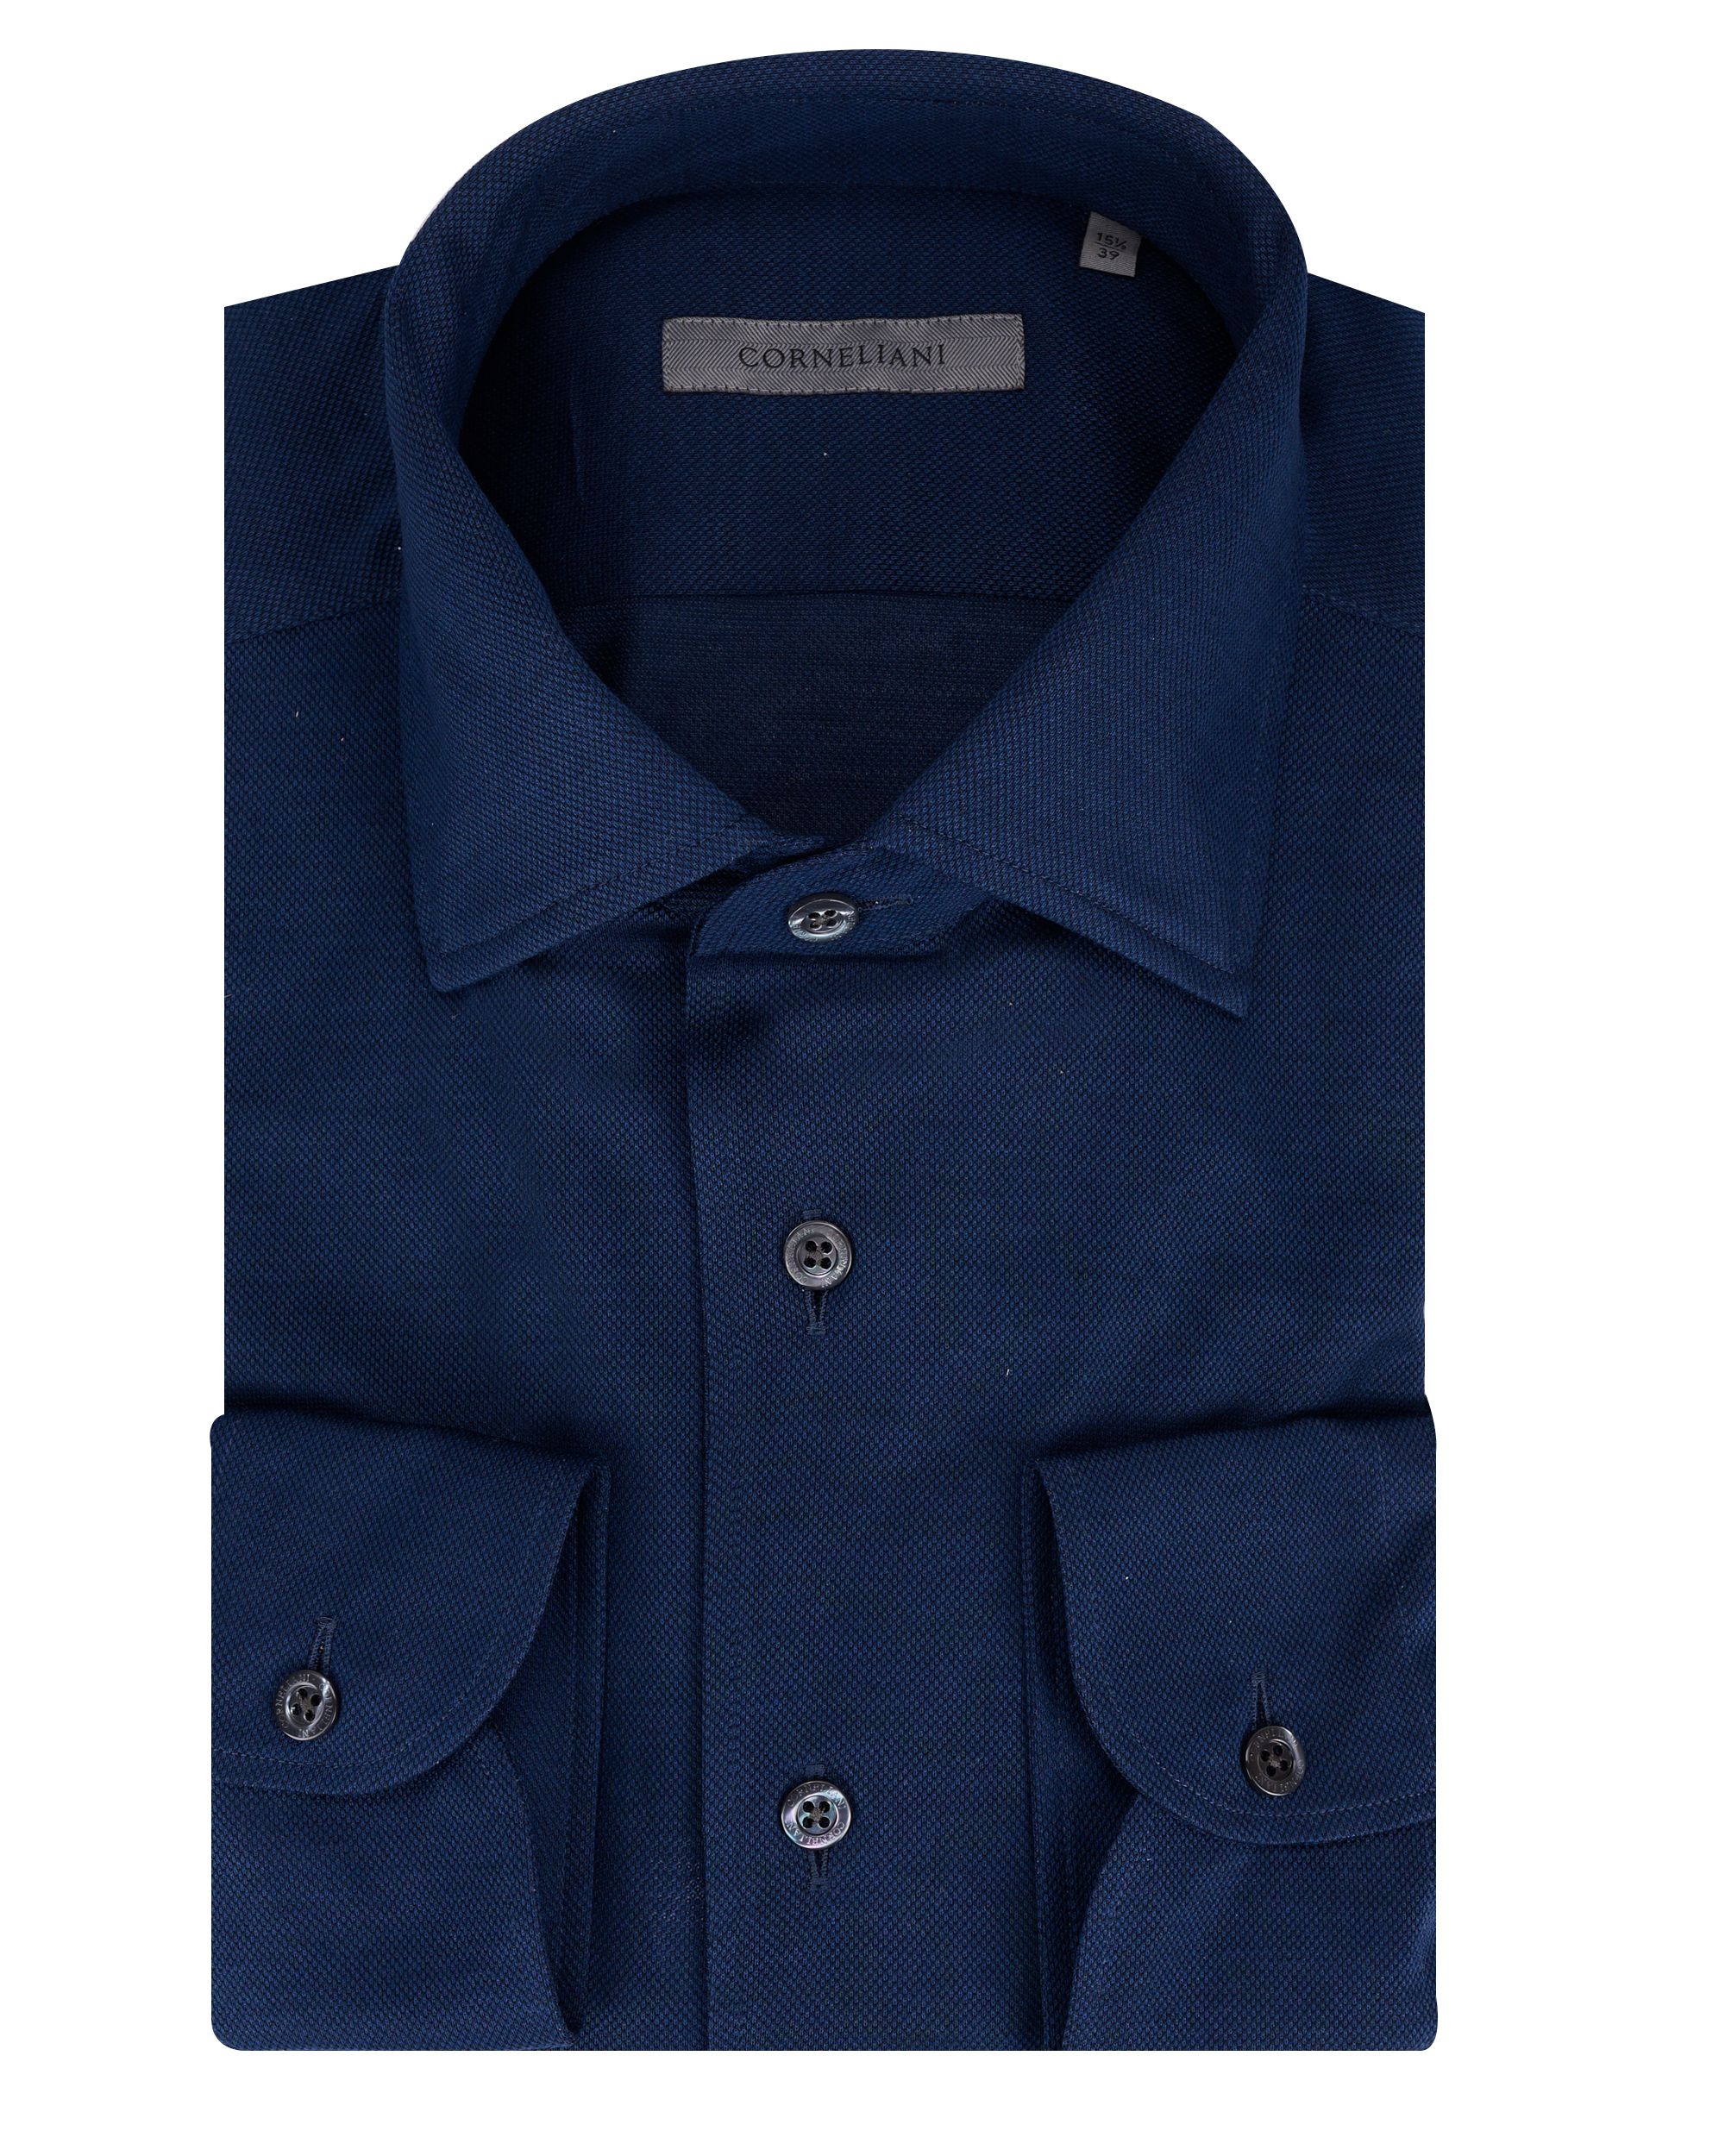 Corneliani Overhemd LM Blauw 090767-001-39